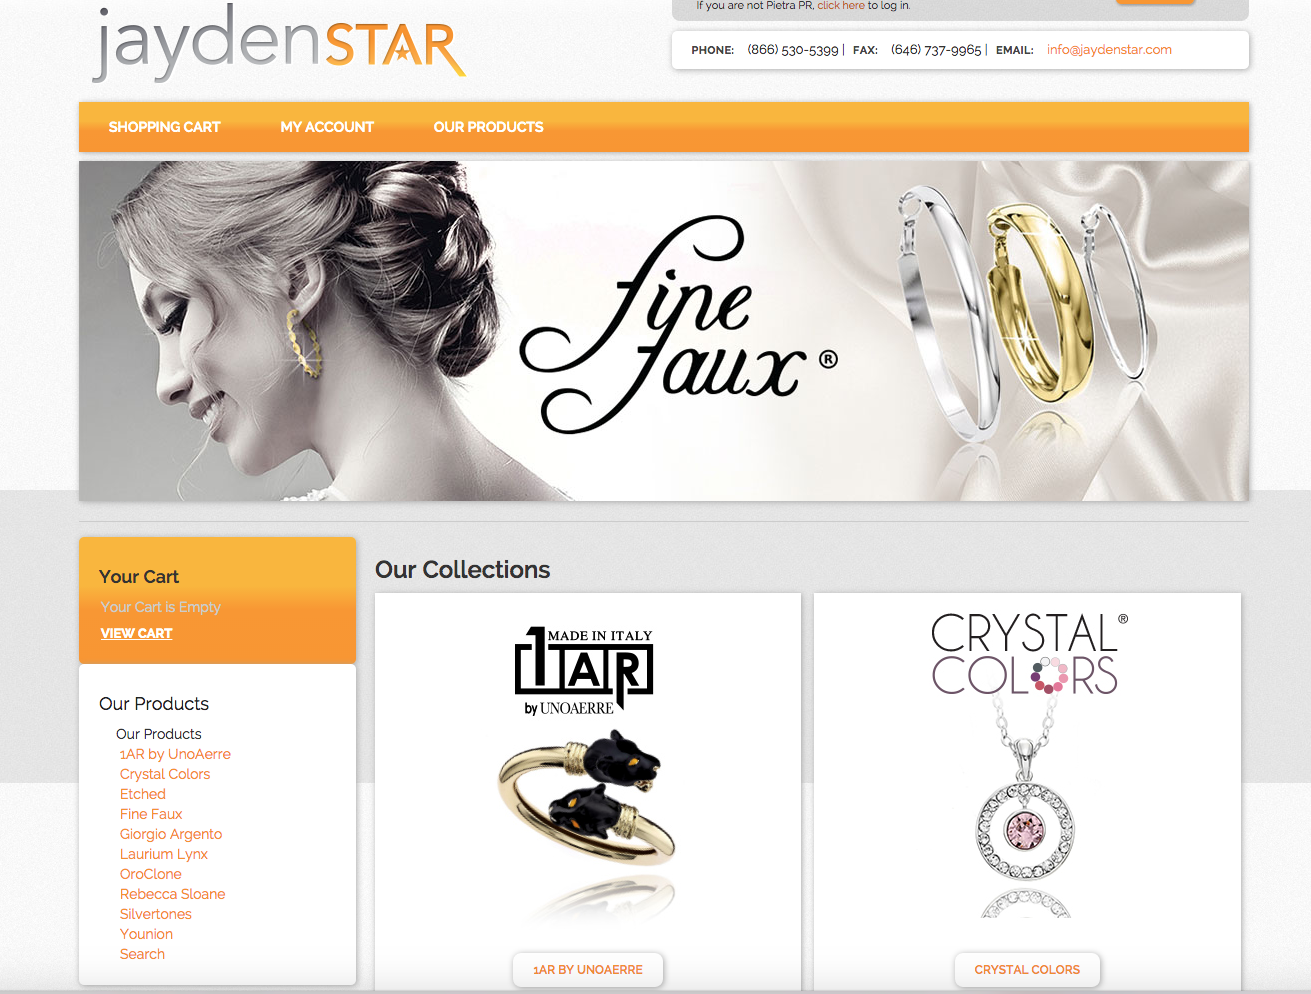 New look for the Jayden Star website.